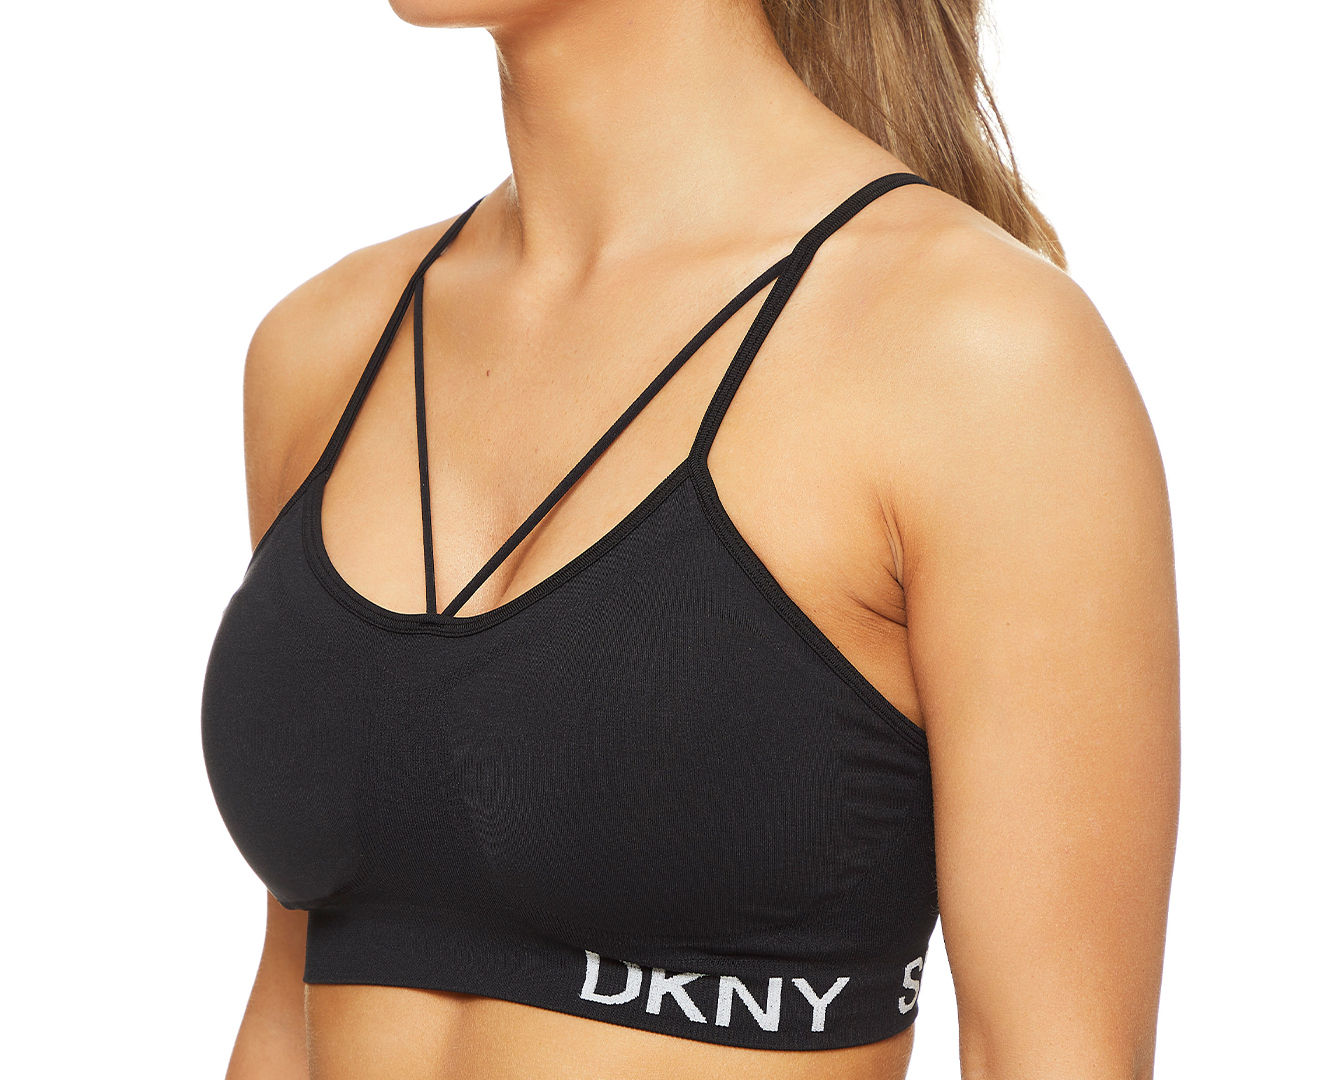 DKNY Women's Seamless Strappy Sports Bra - Black